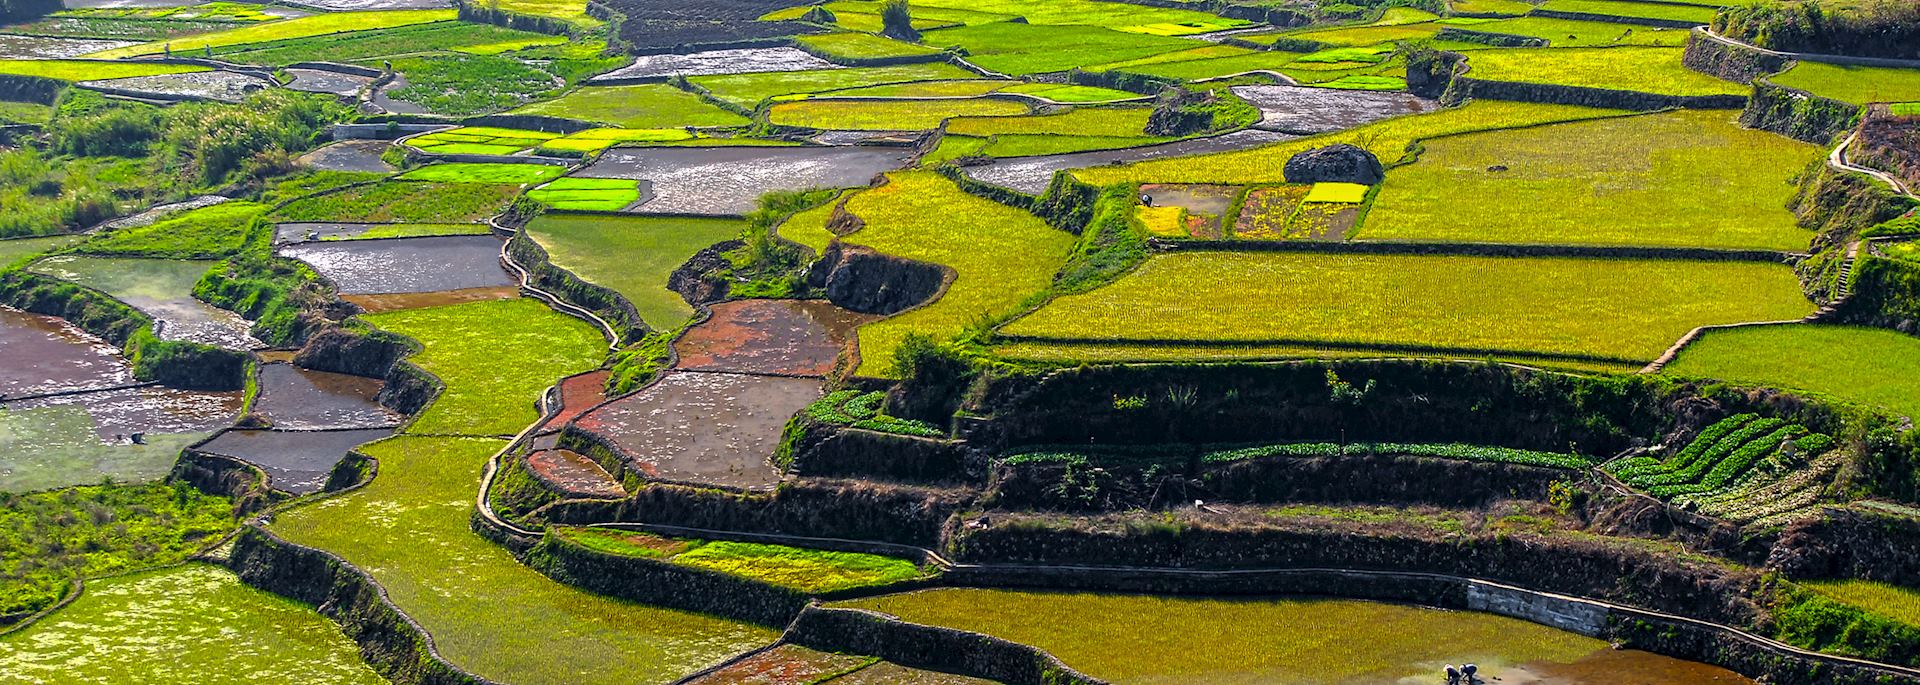 Rice terraces at Sagada